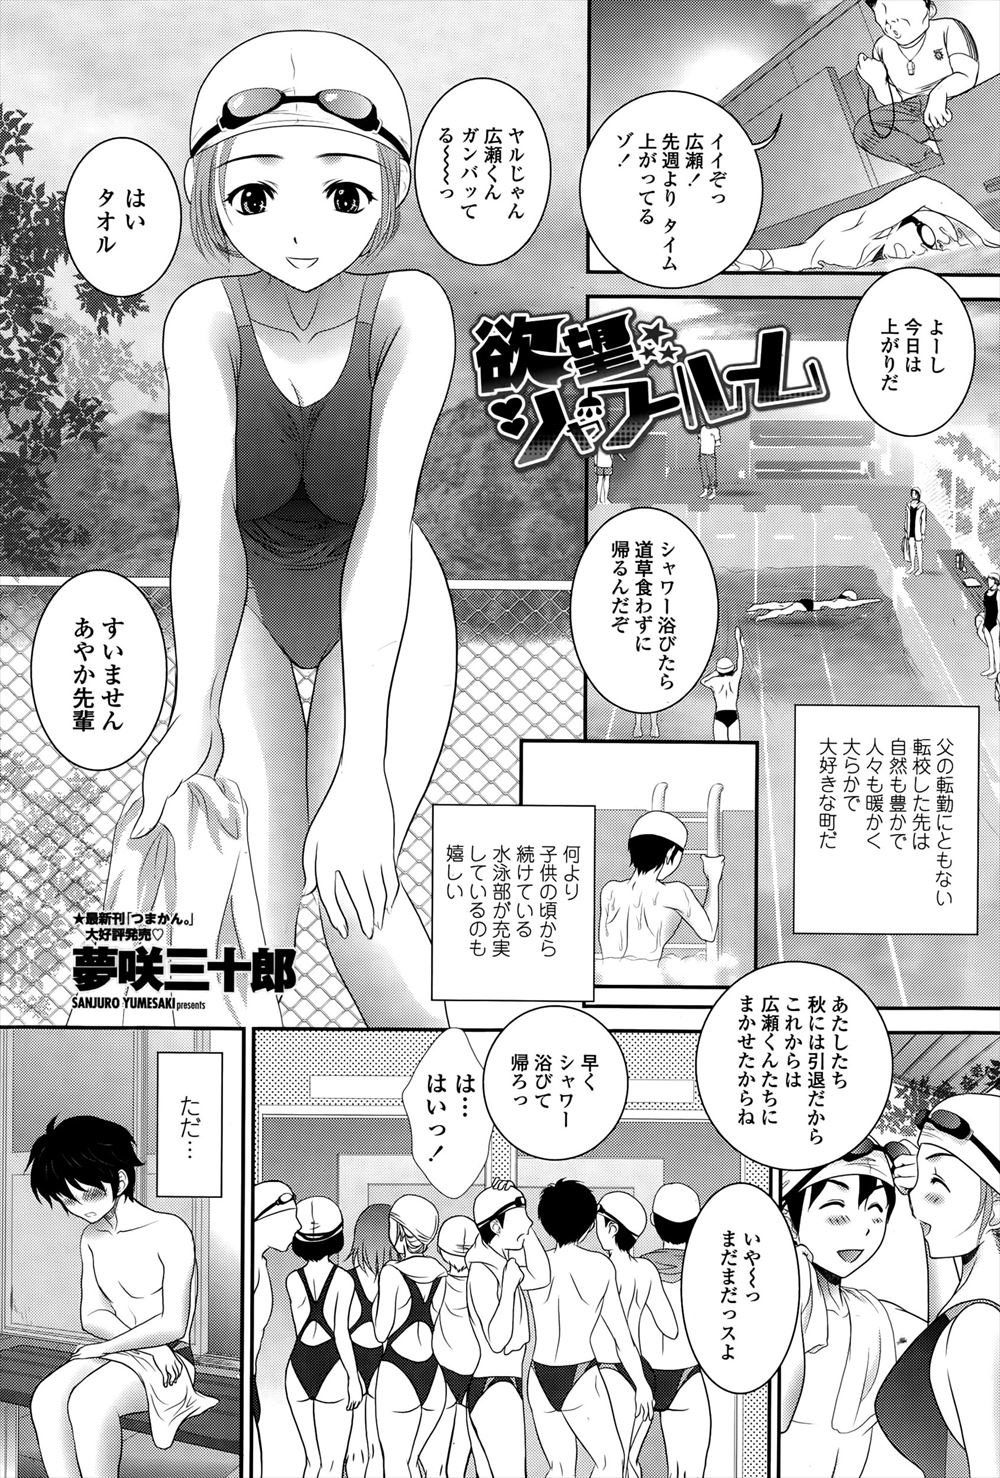 【エロ漫画】転校してきた田舎の学校のプールのシャワールームが男女共同で、勃起してしまった男子が大好きな先輩たちに巨根ちんぽを気に入られハーレムセックスでヌイてもらったｗ